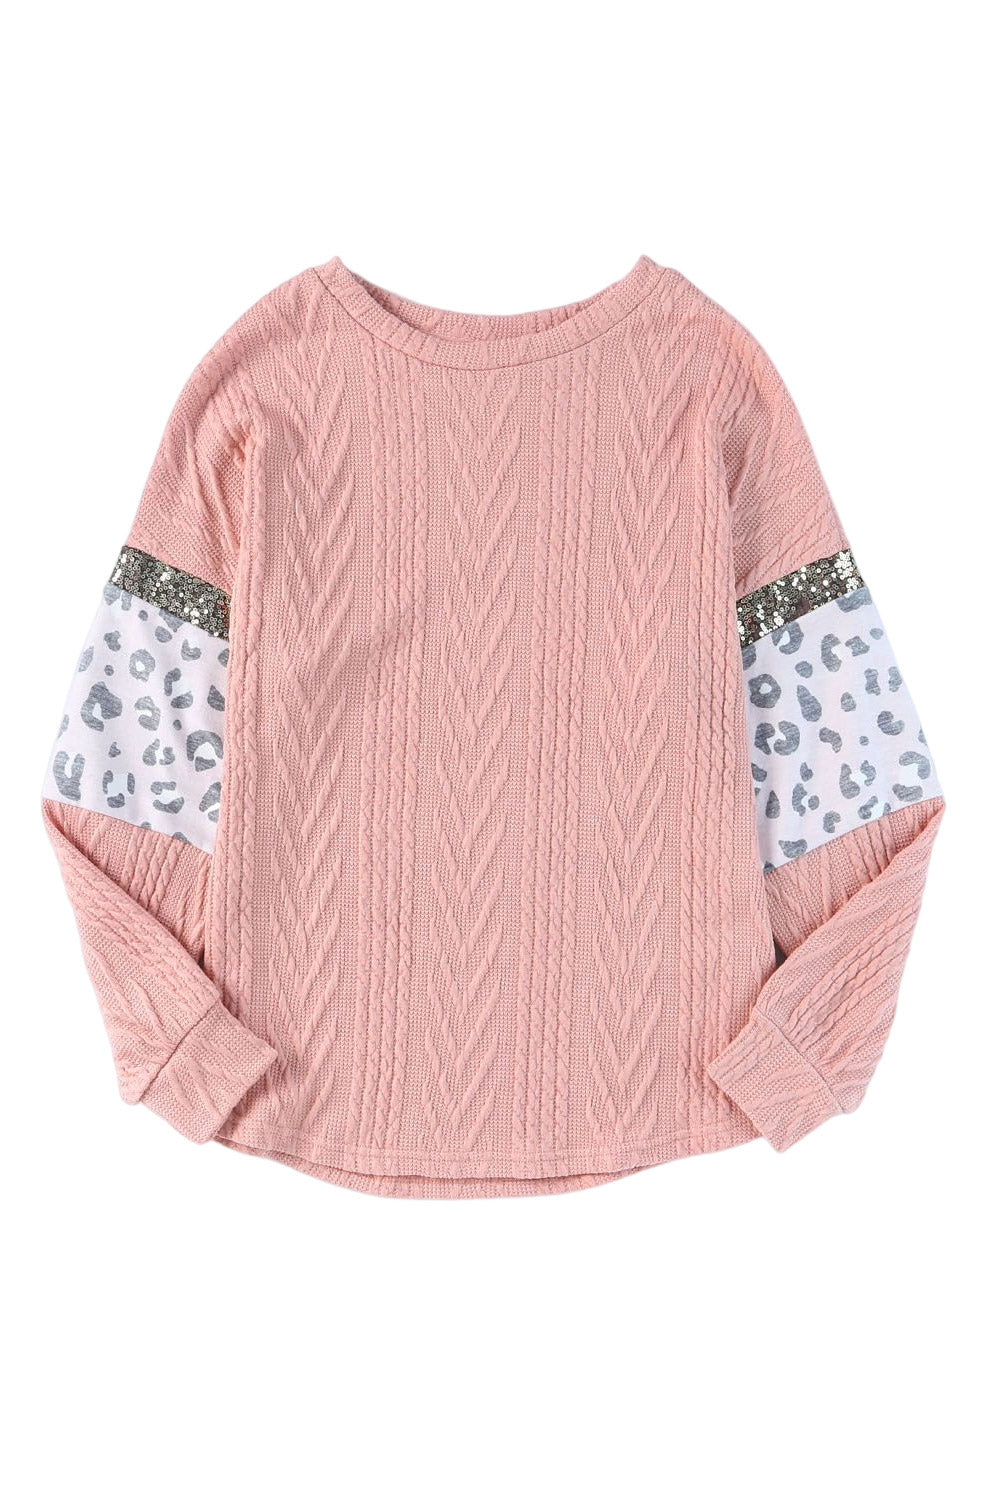 Rožnata pletena majica z leopardjimi rokavi in ​​teksturiranimi bleščicami